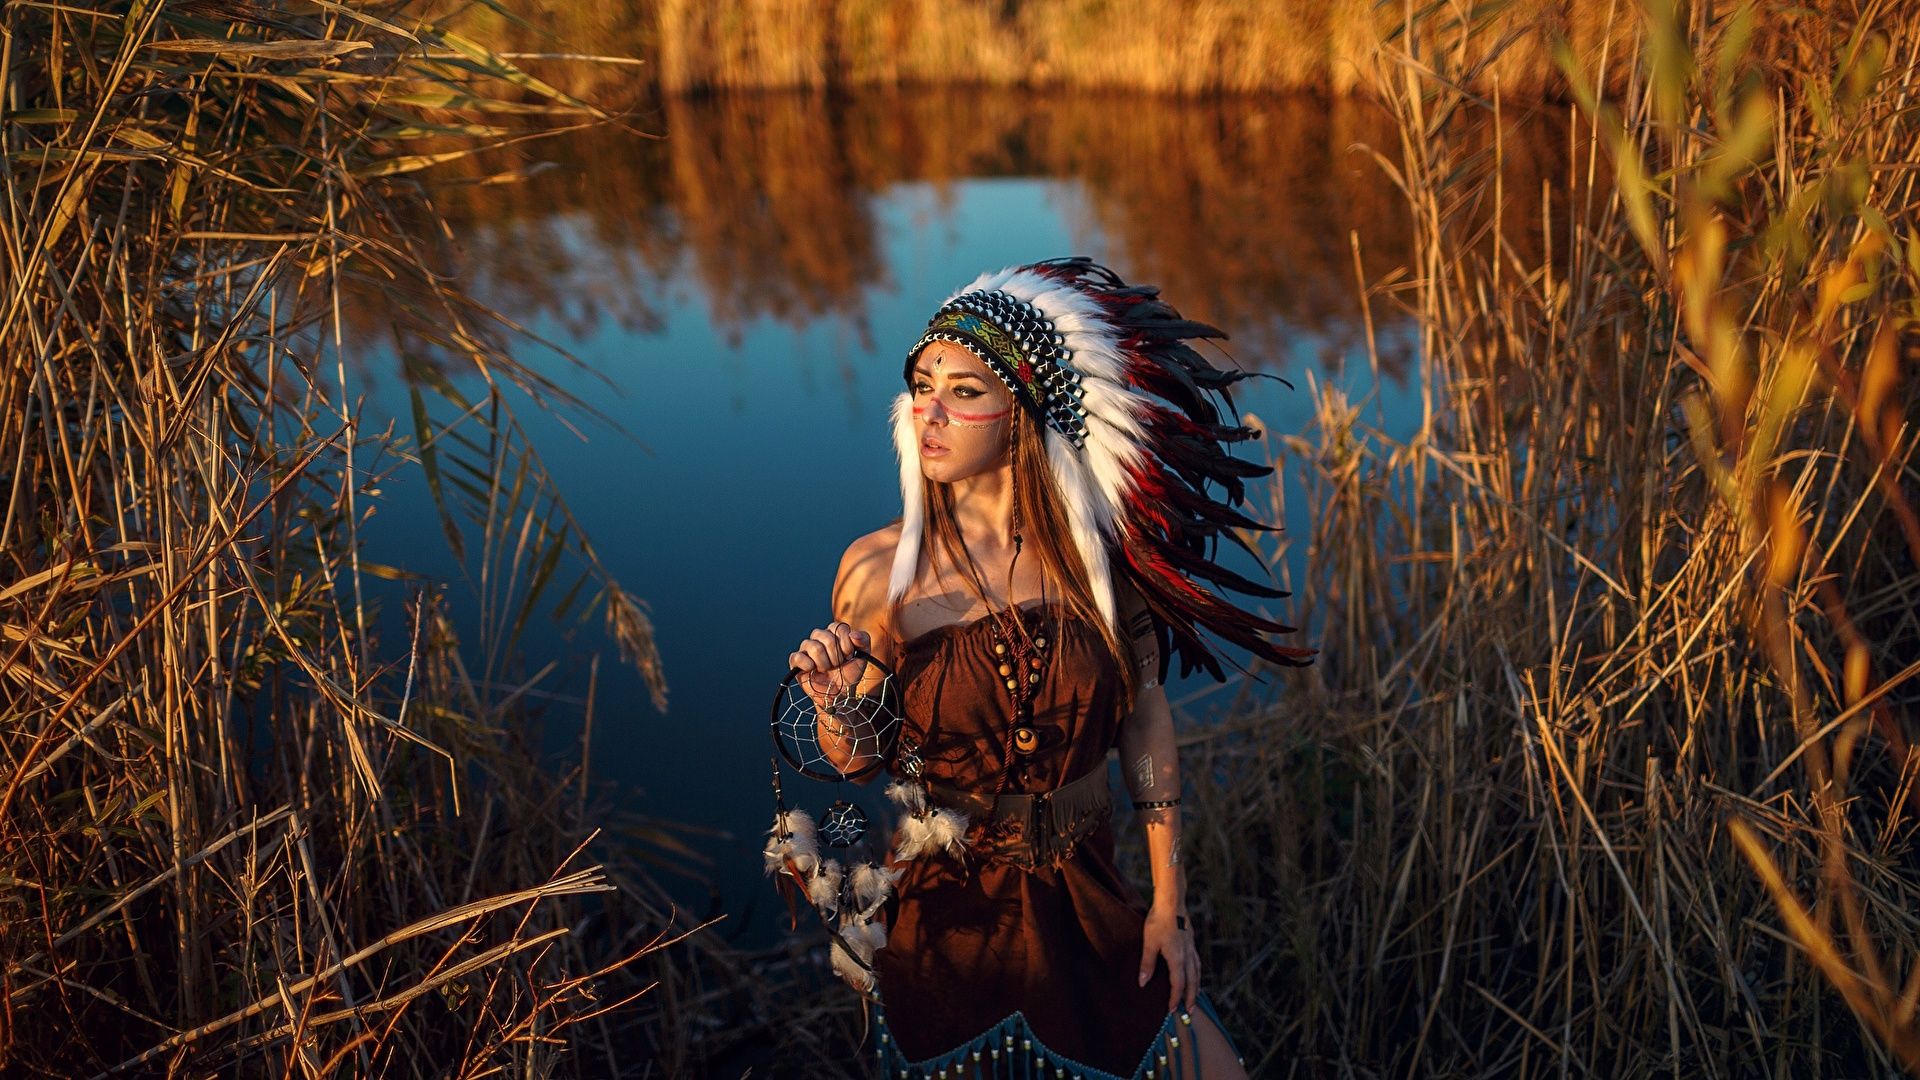 Beautiful Photo Indigenous People .teahub.io